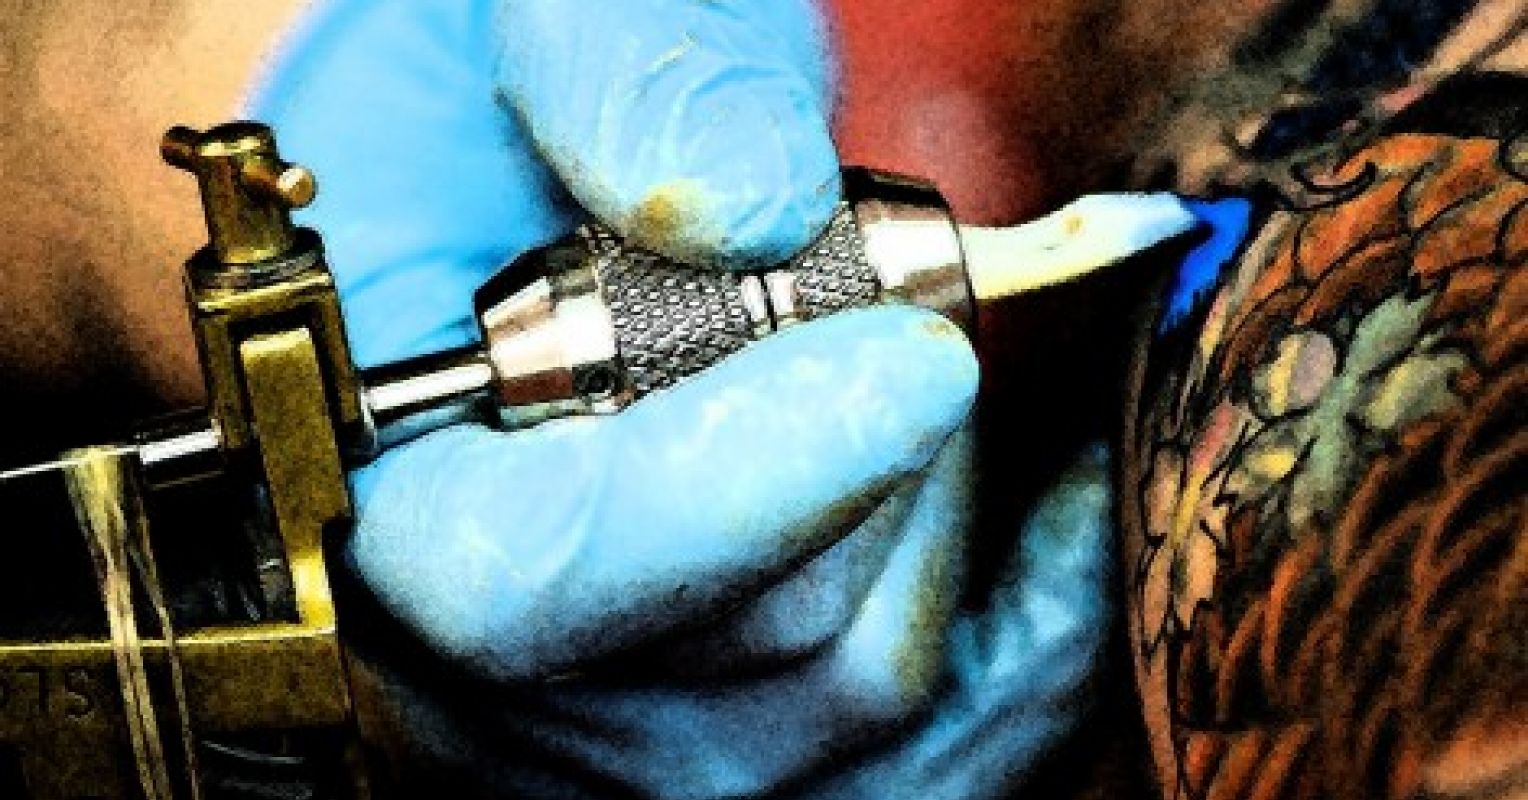 Degrading Tattoos